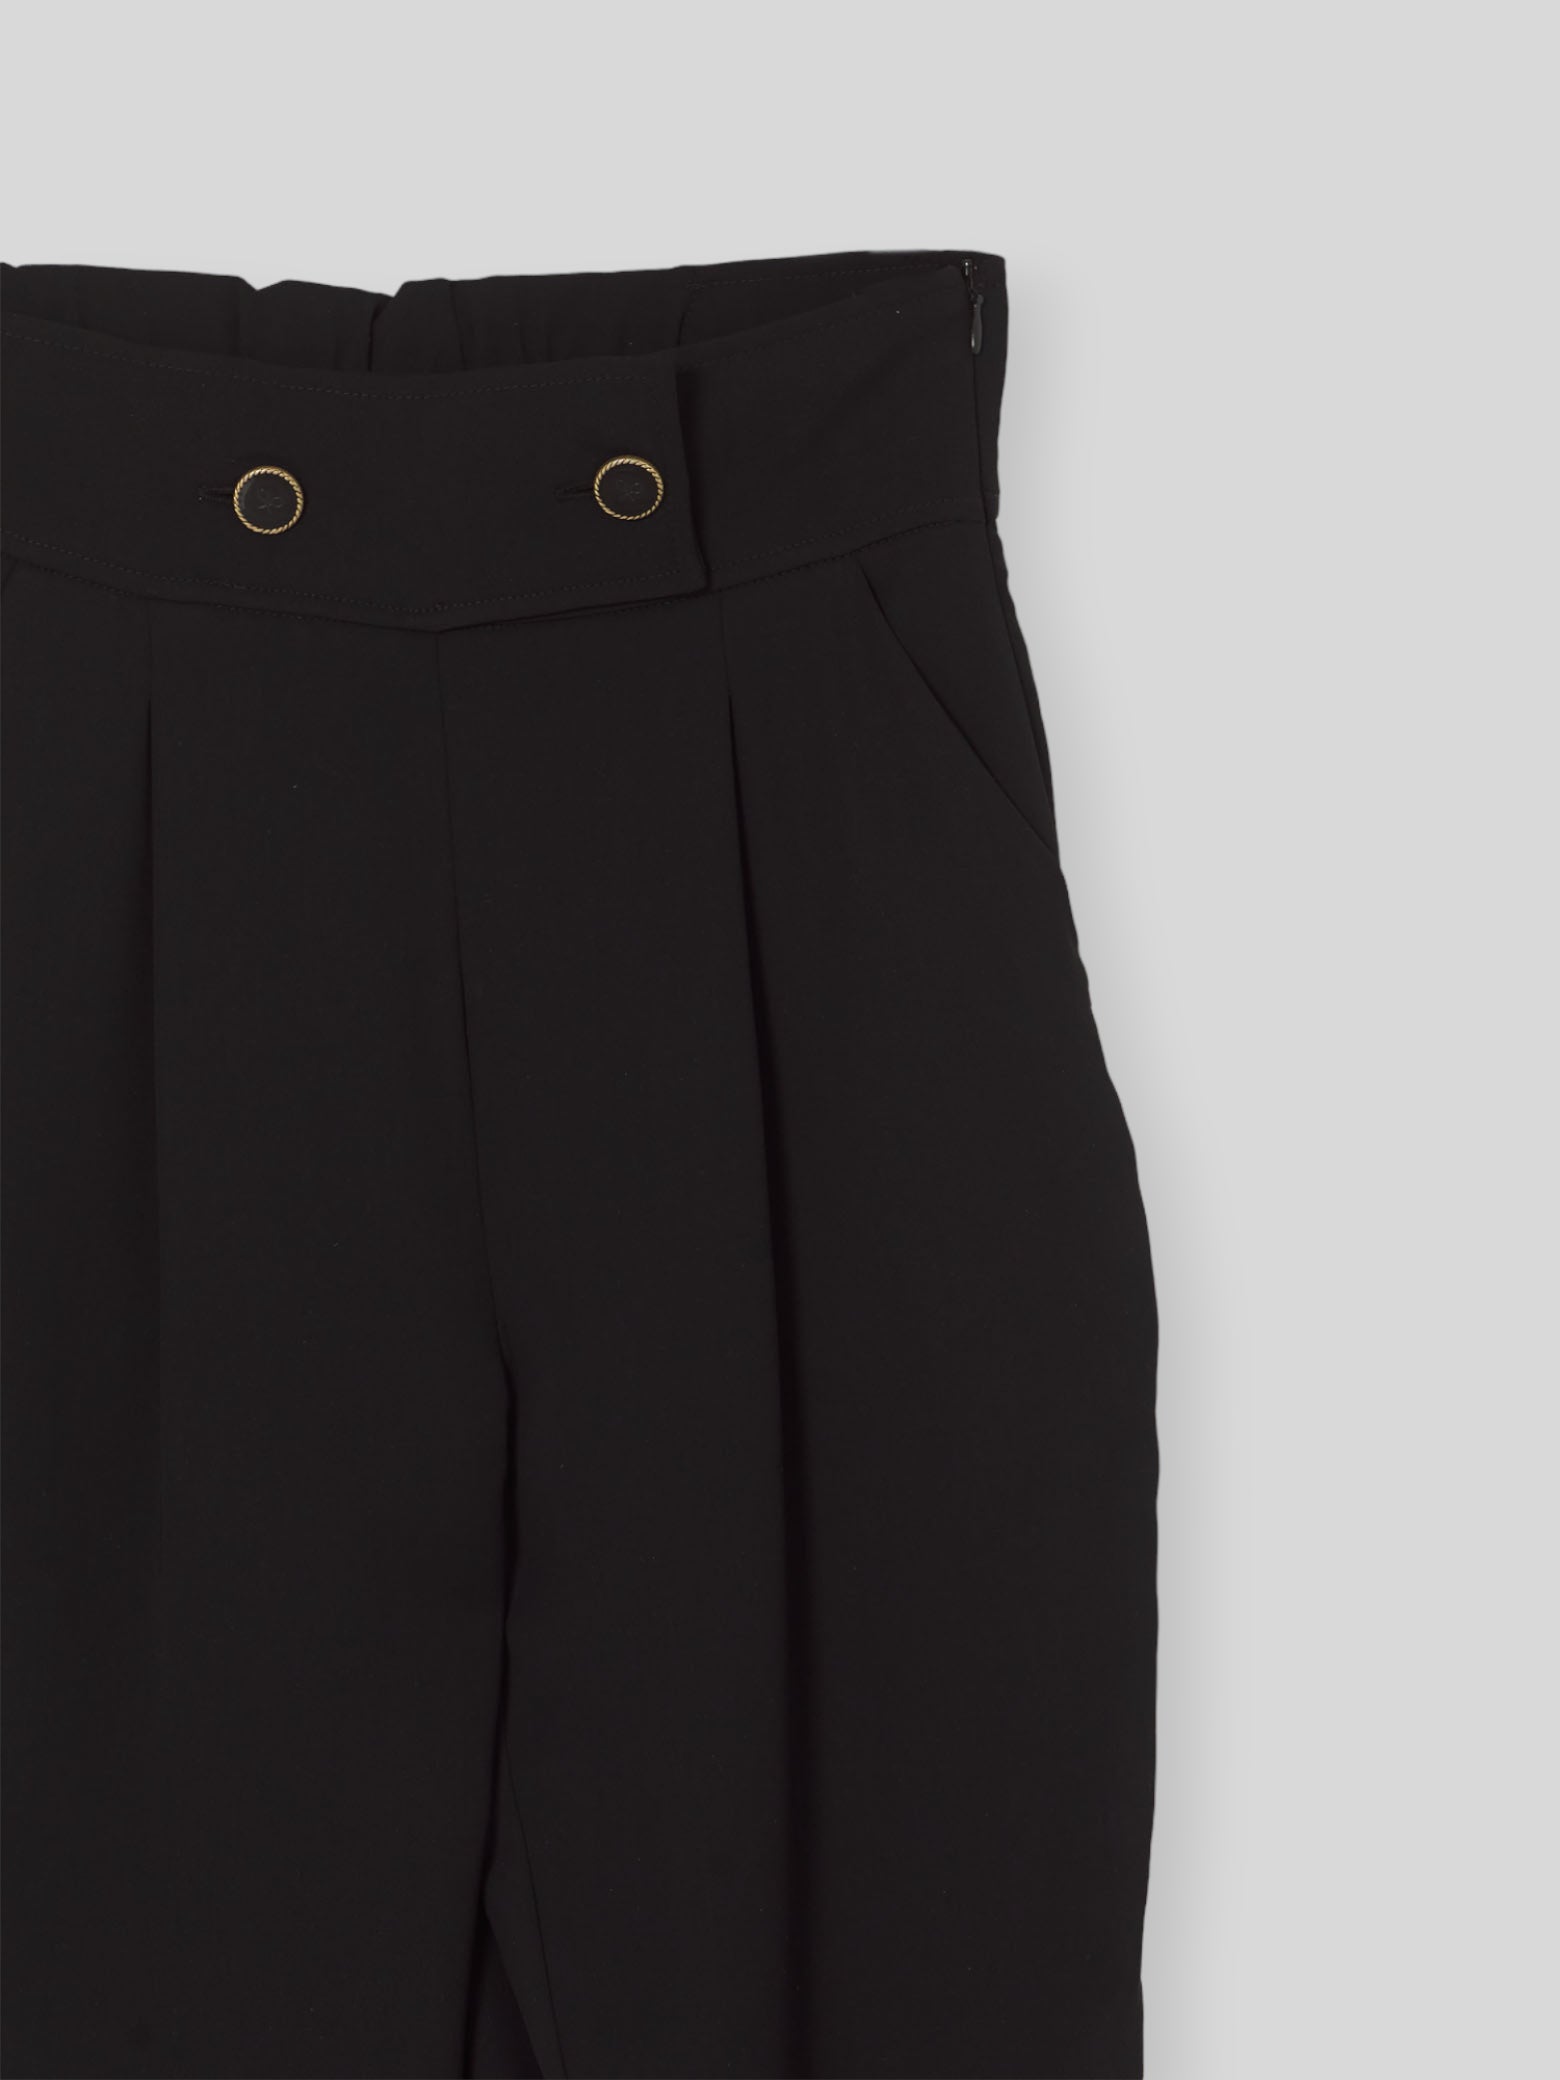 Pantalon noir classique